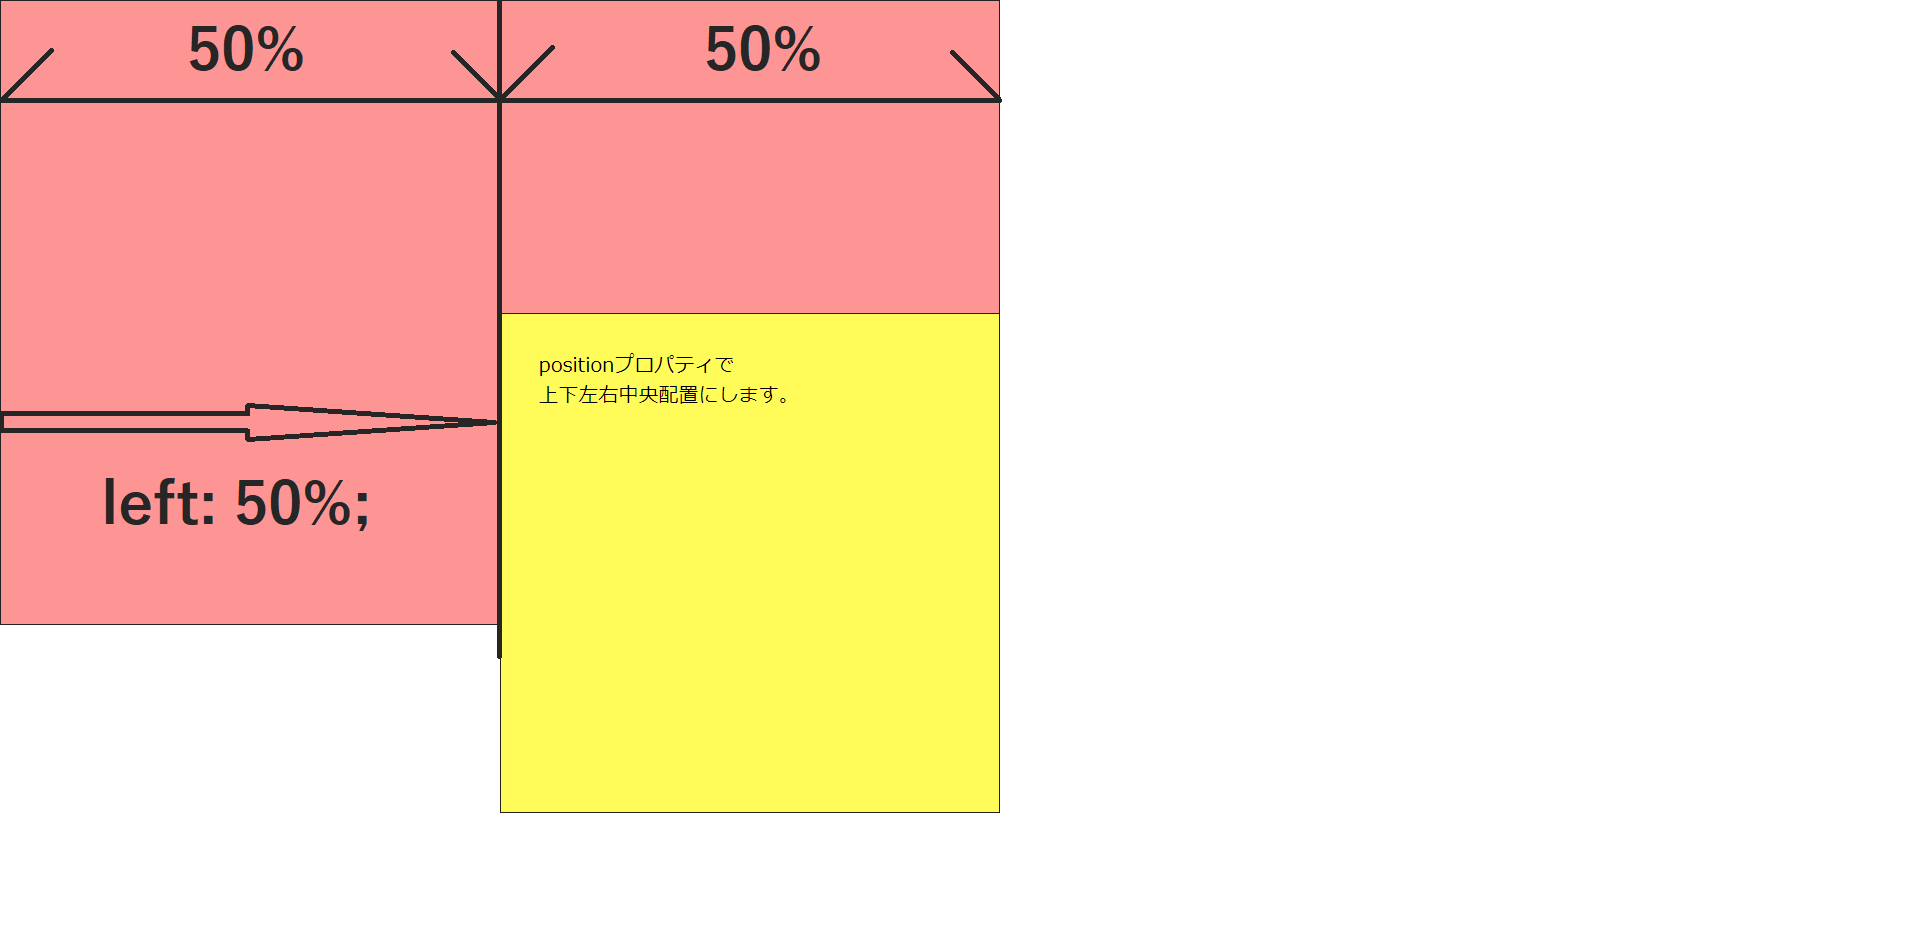 黄色ボックスの要素の左がピンクボックスの左から50%の位置にぴったり合う状態